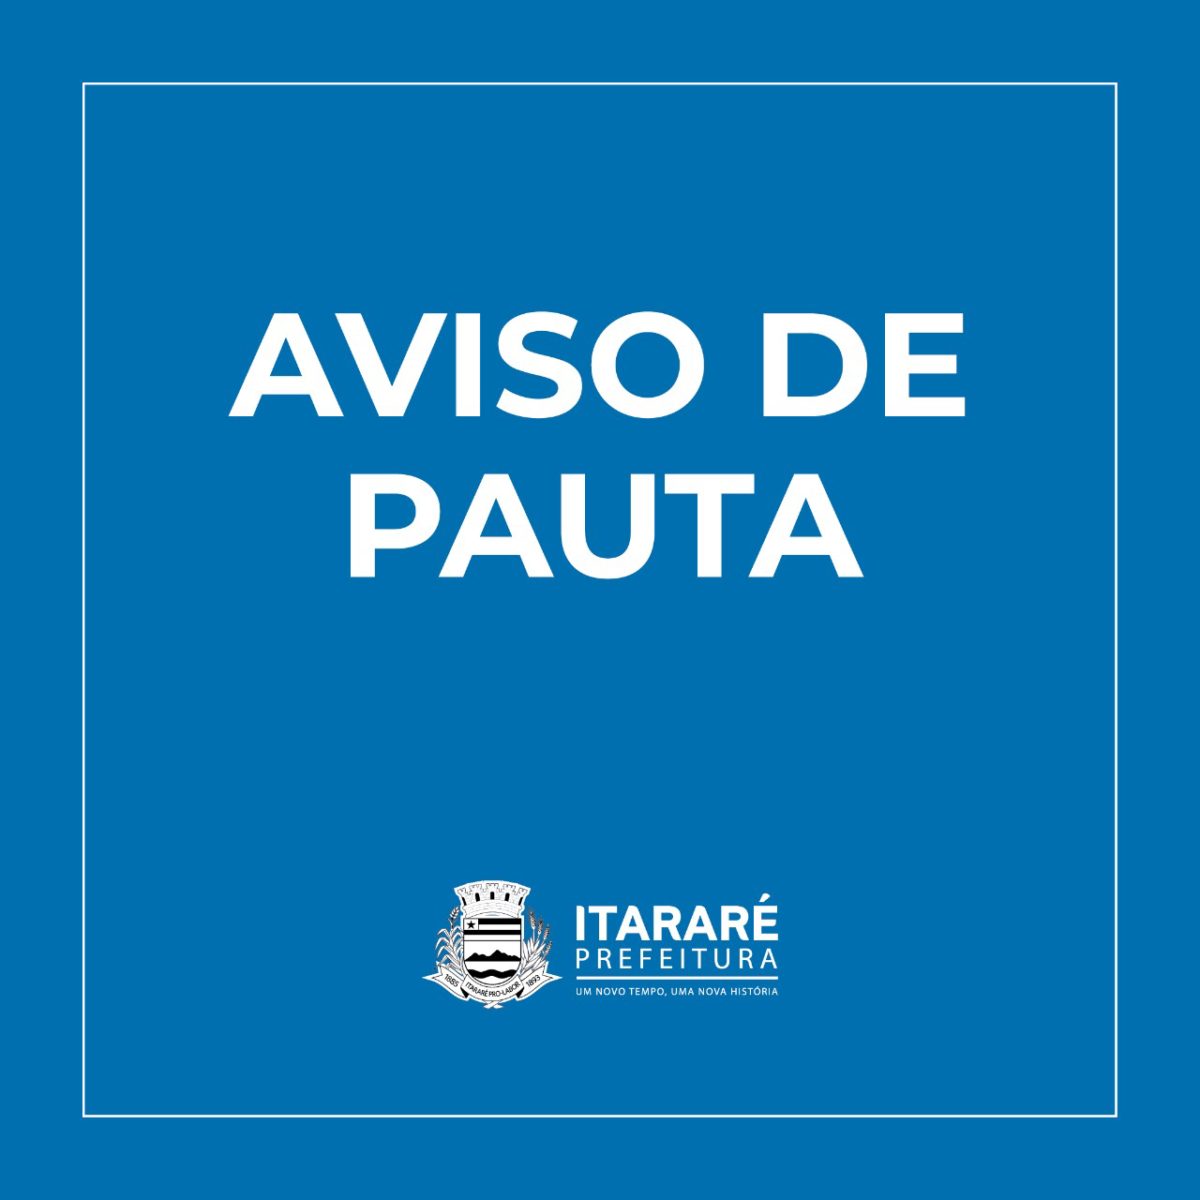 AVISO DE PAUTA:  Gestão Heliton do Valle realizará I Fórum de Desenvolvimento Turístico em Itararé (SP)